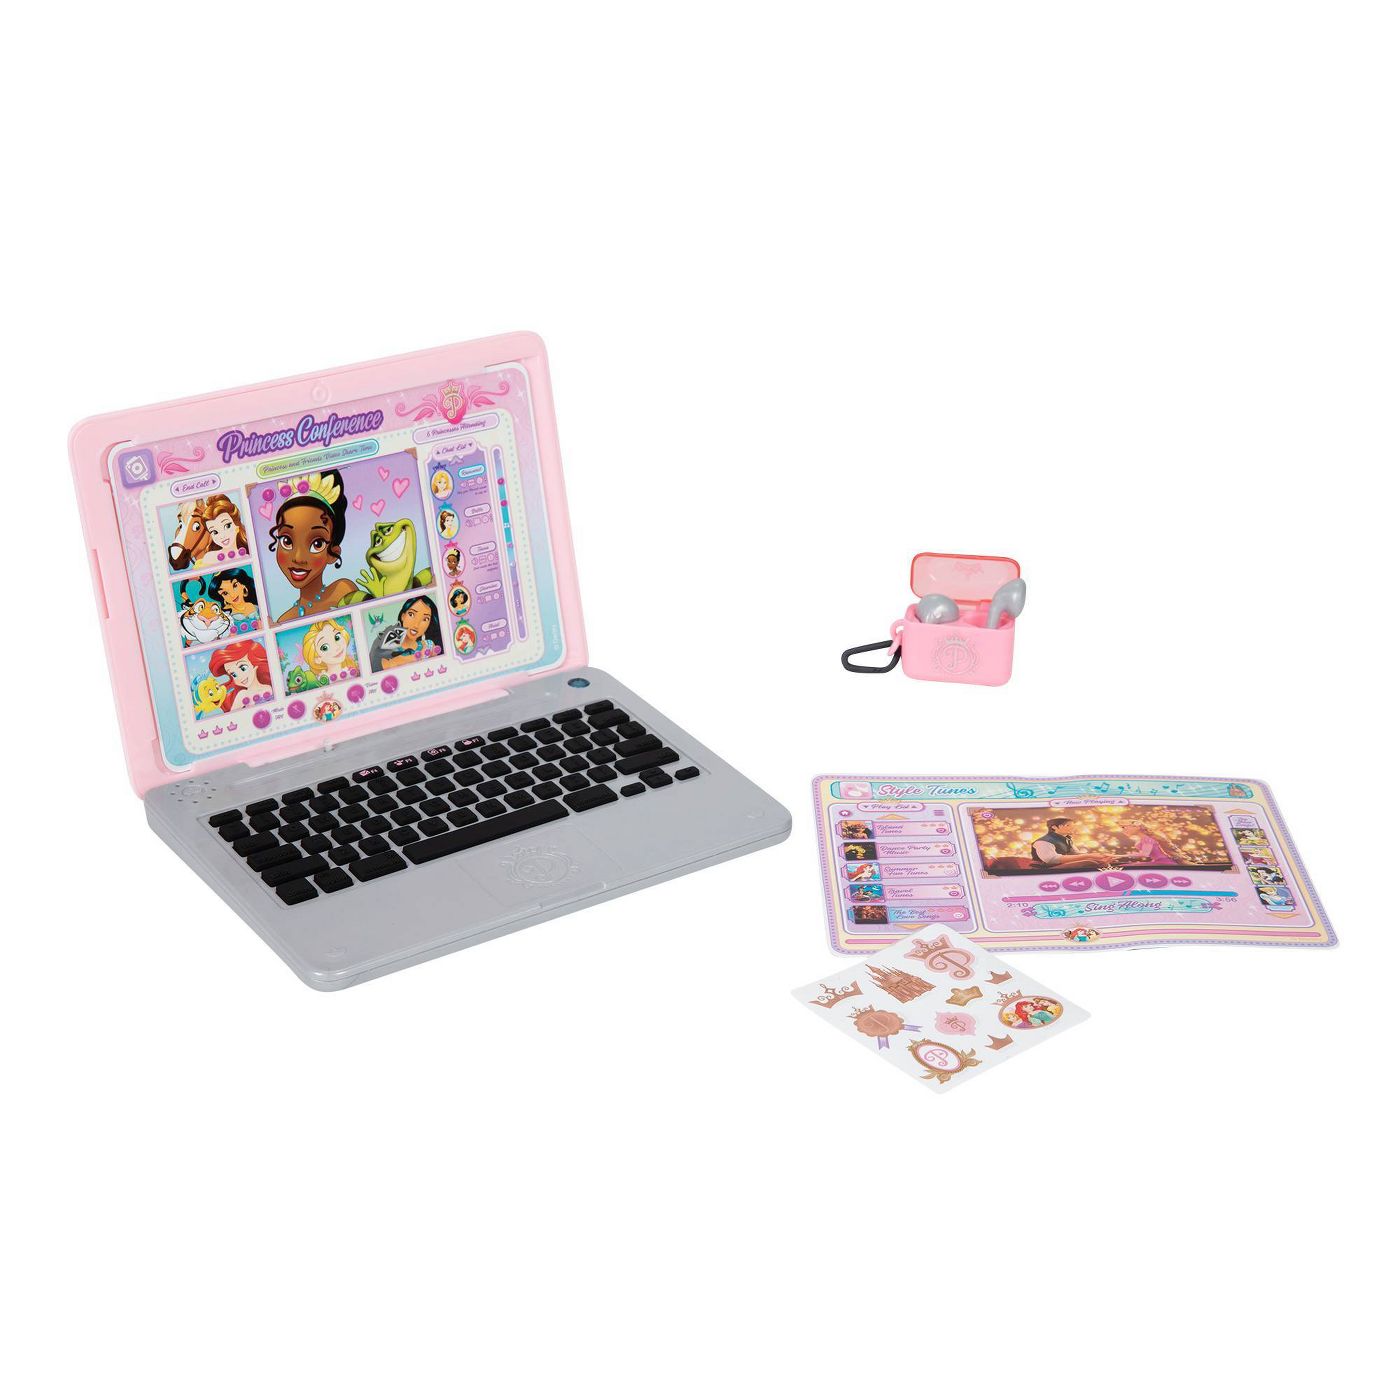 Disney Princess Play Click & Swap Laptop - image 1 of 14